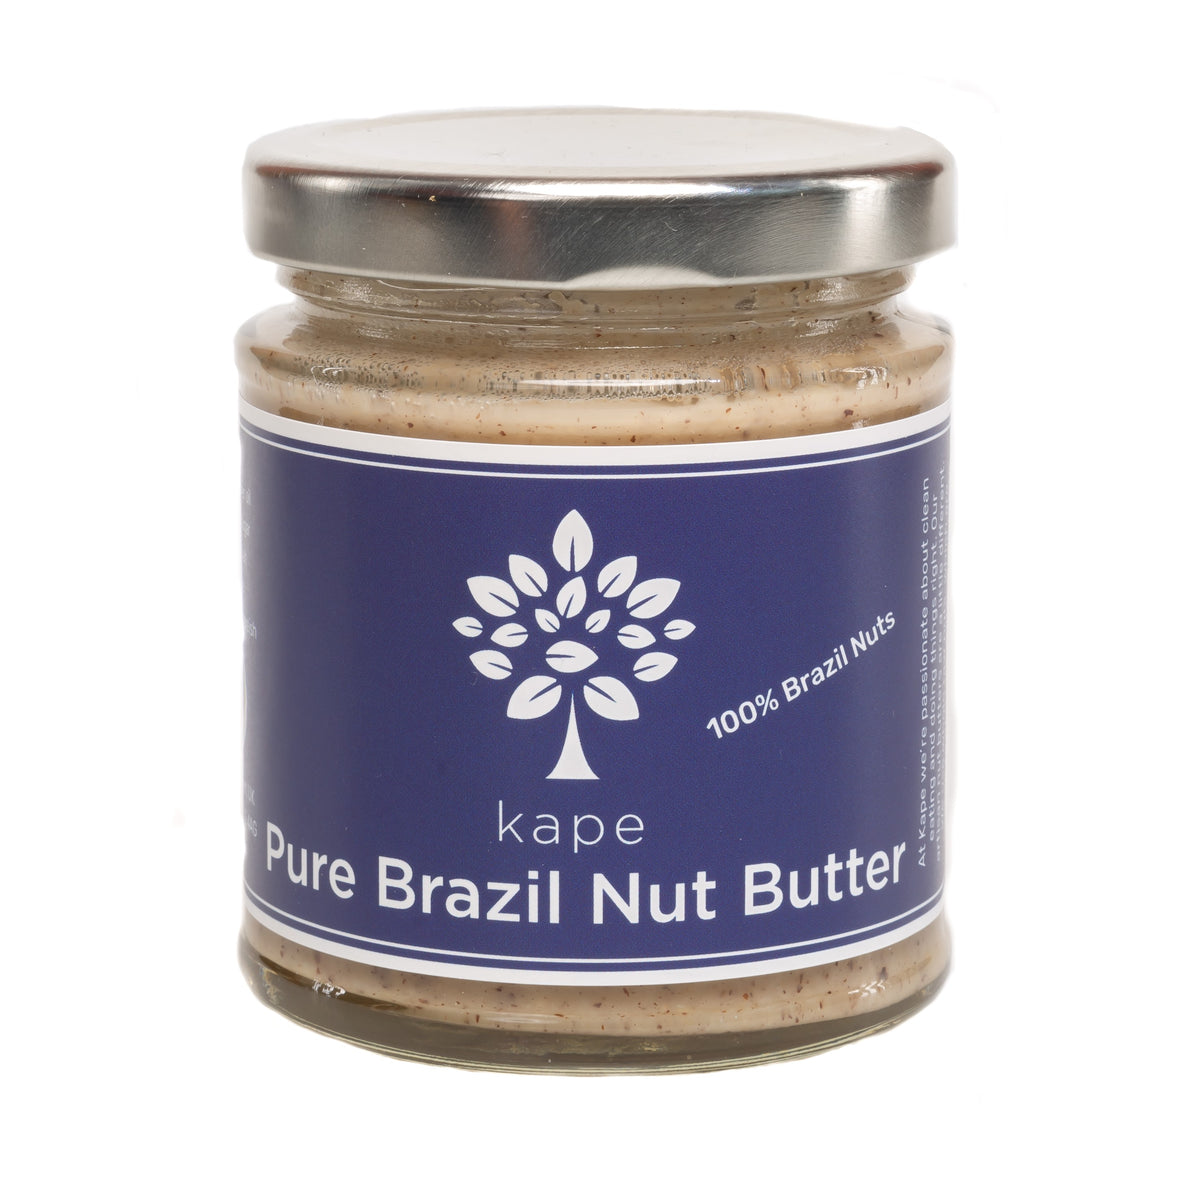 Pure Brazil Nut Butter